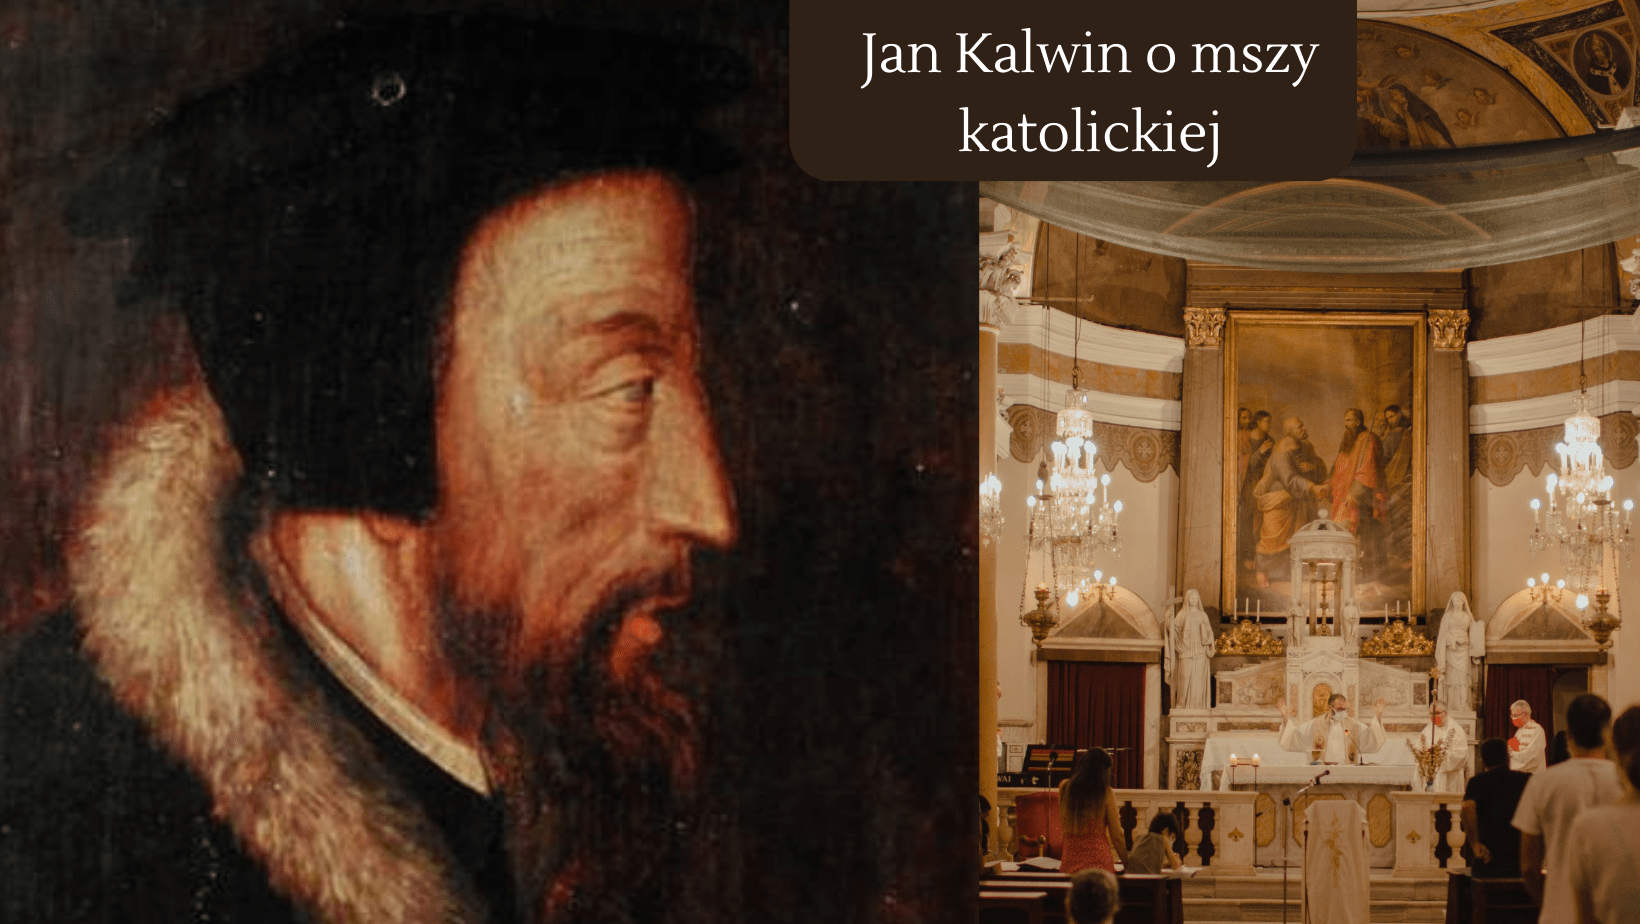 Jan Kalwin o mszy katolickiej